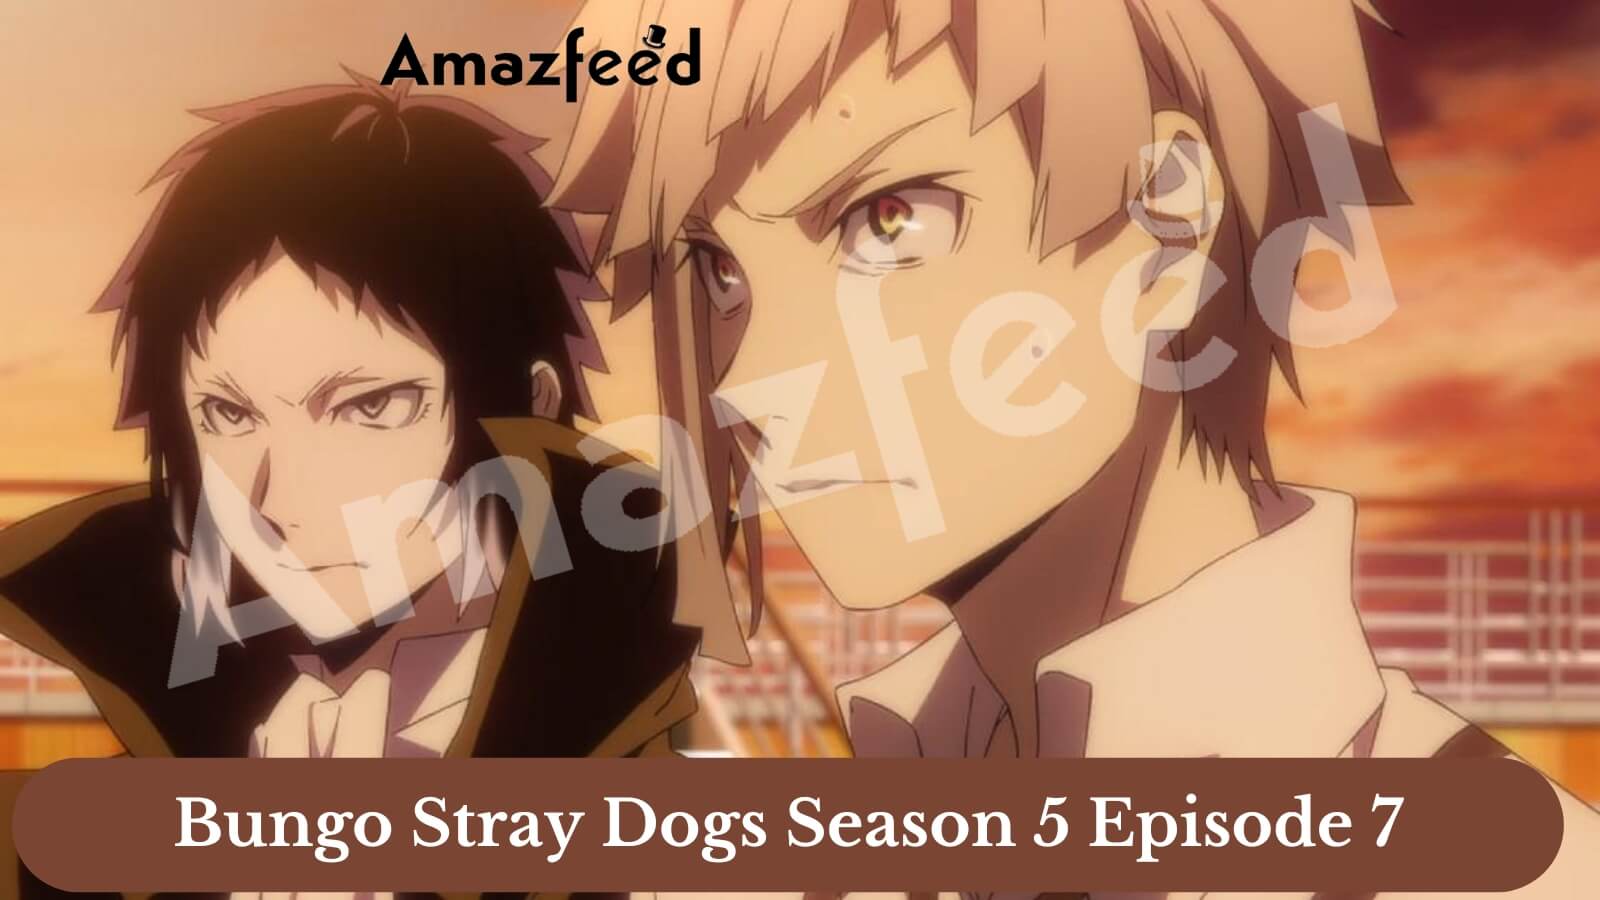 Anime Review: Bungo Stray Dogs Season 2 (2016) by Takuya Igarashi - IMDb